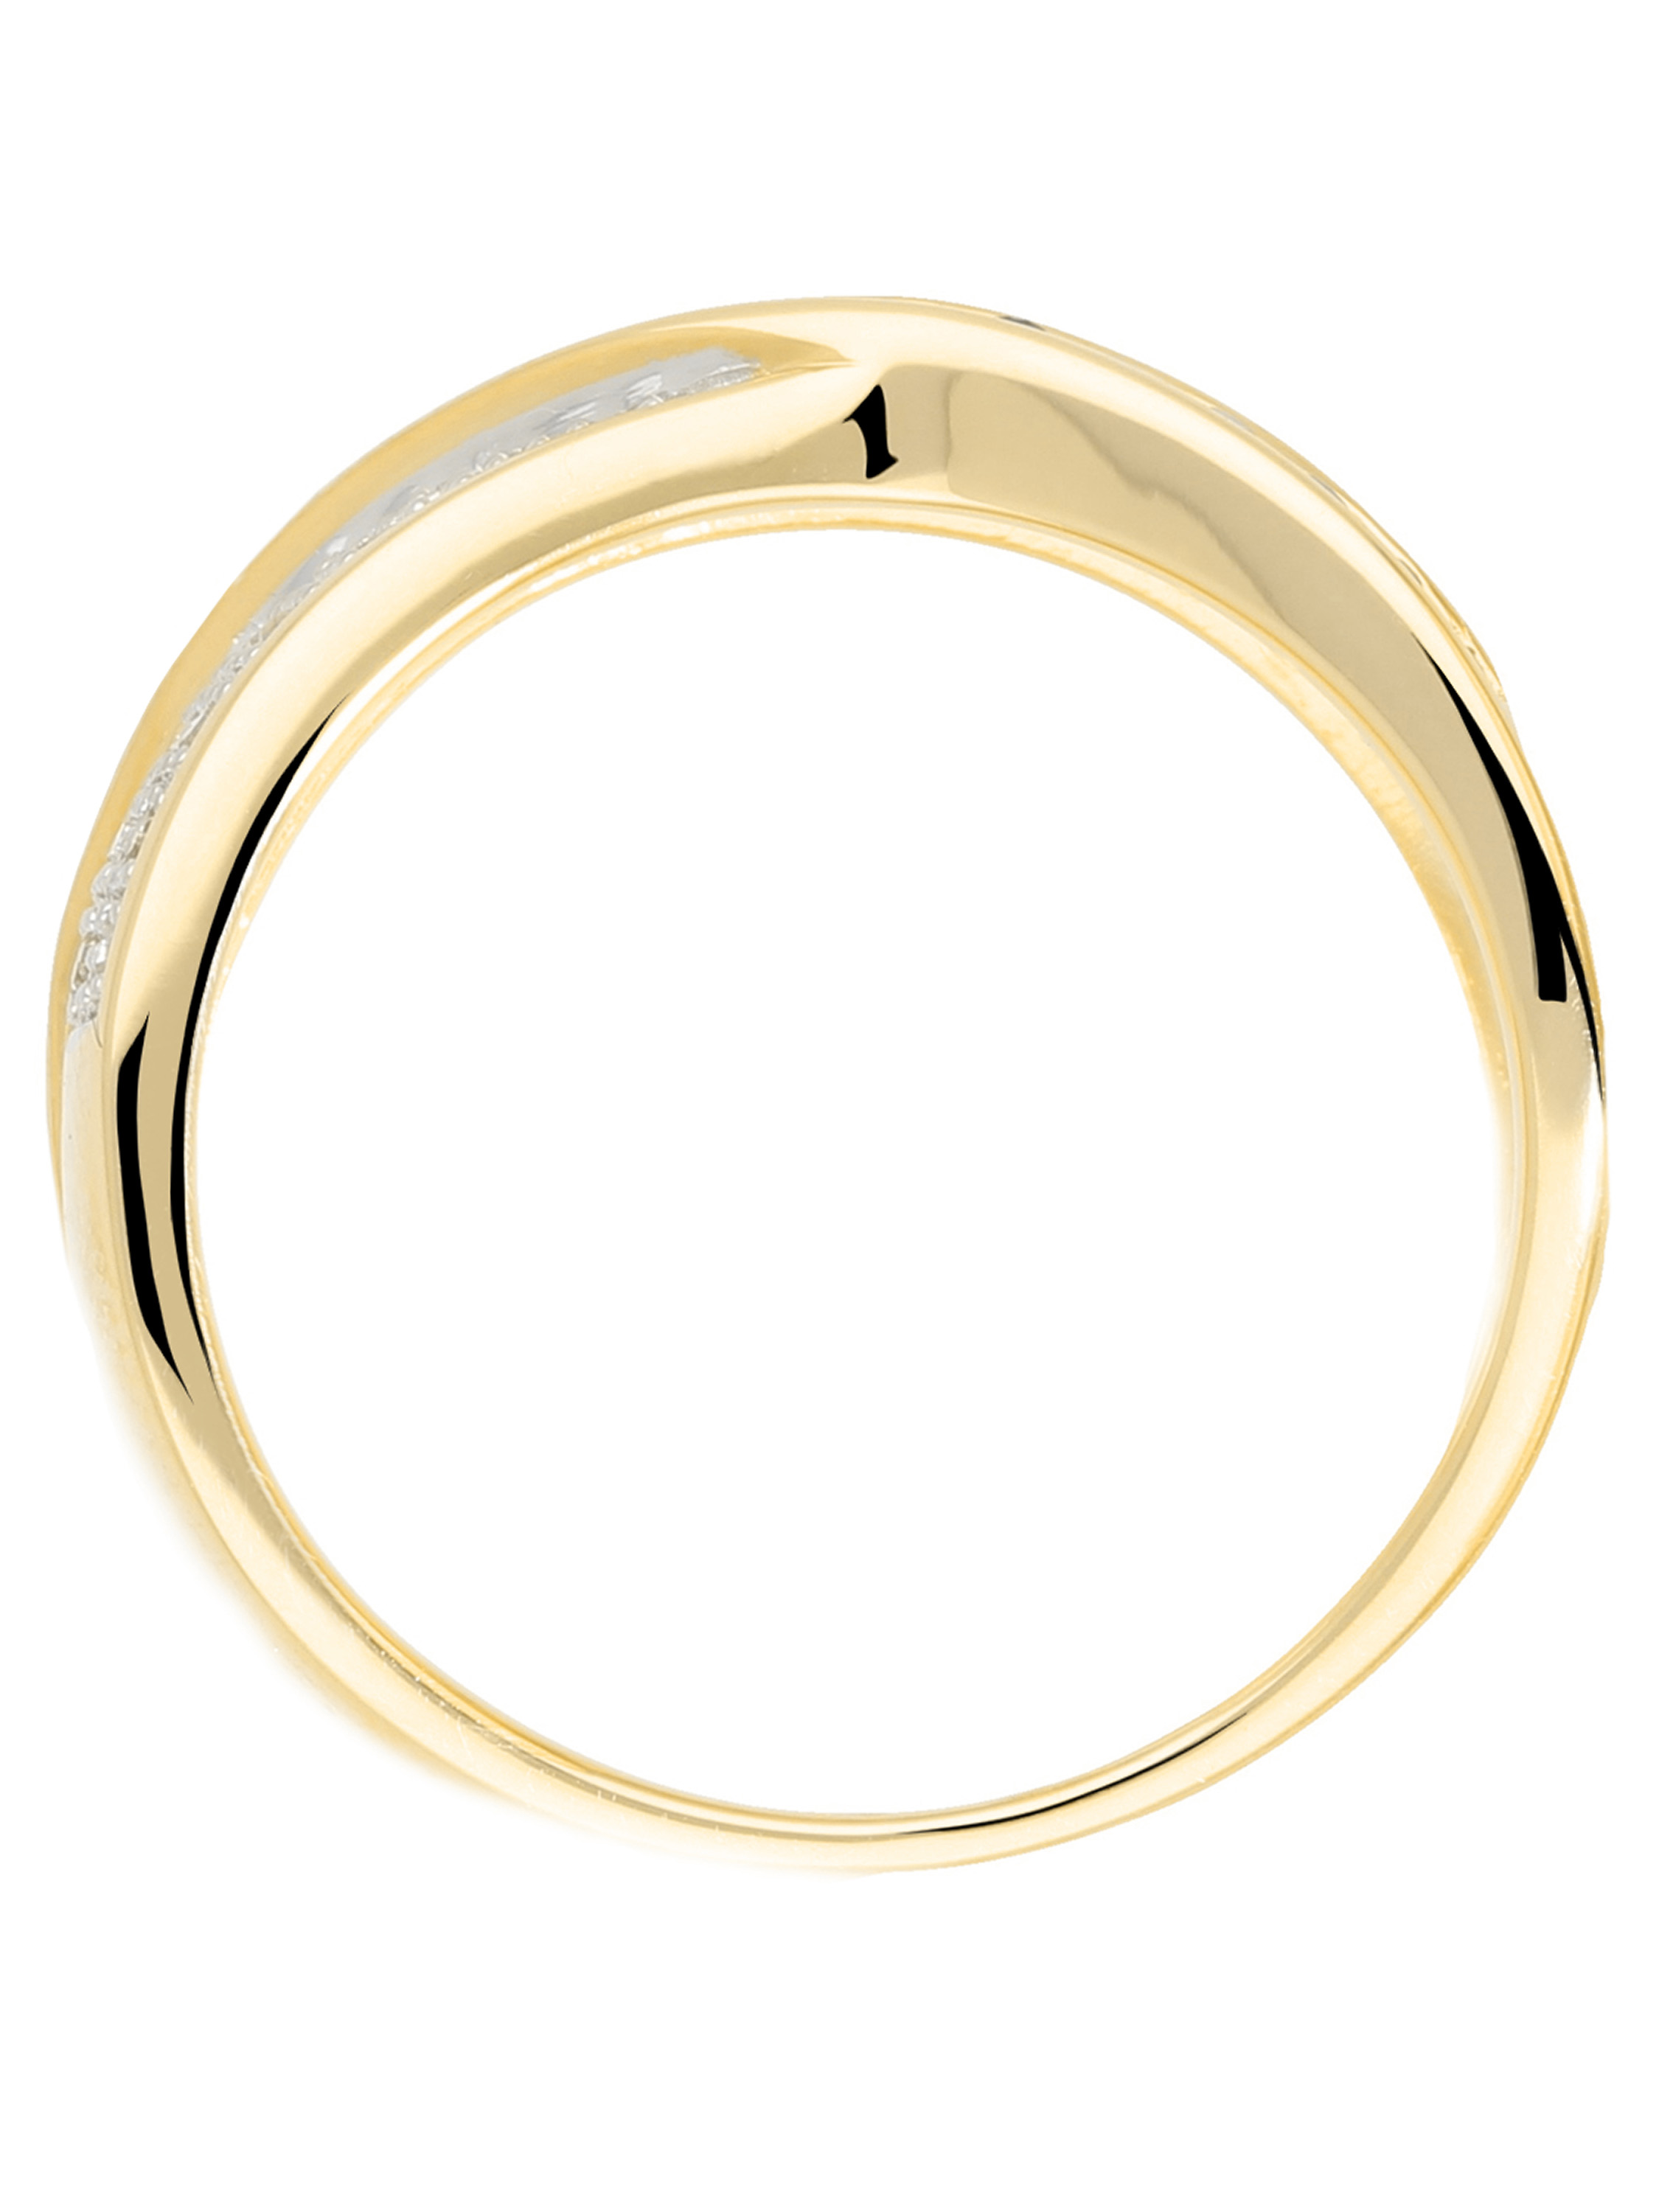 Melvena - Saphir Diamant Ring mit Edelstein Gold - 0,11ct.